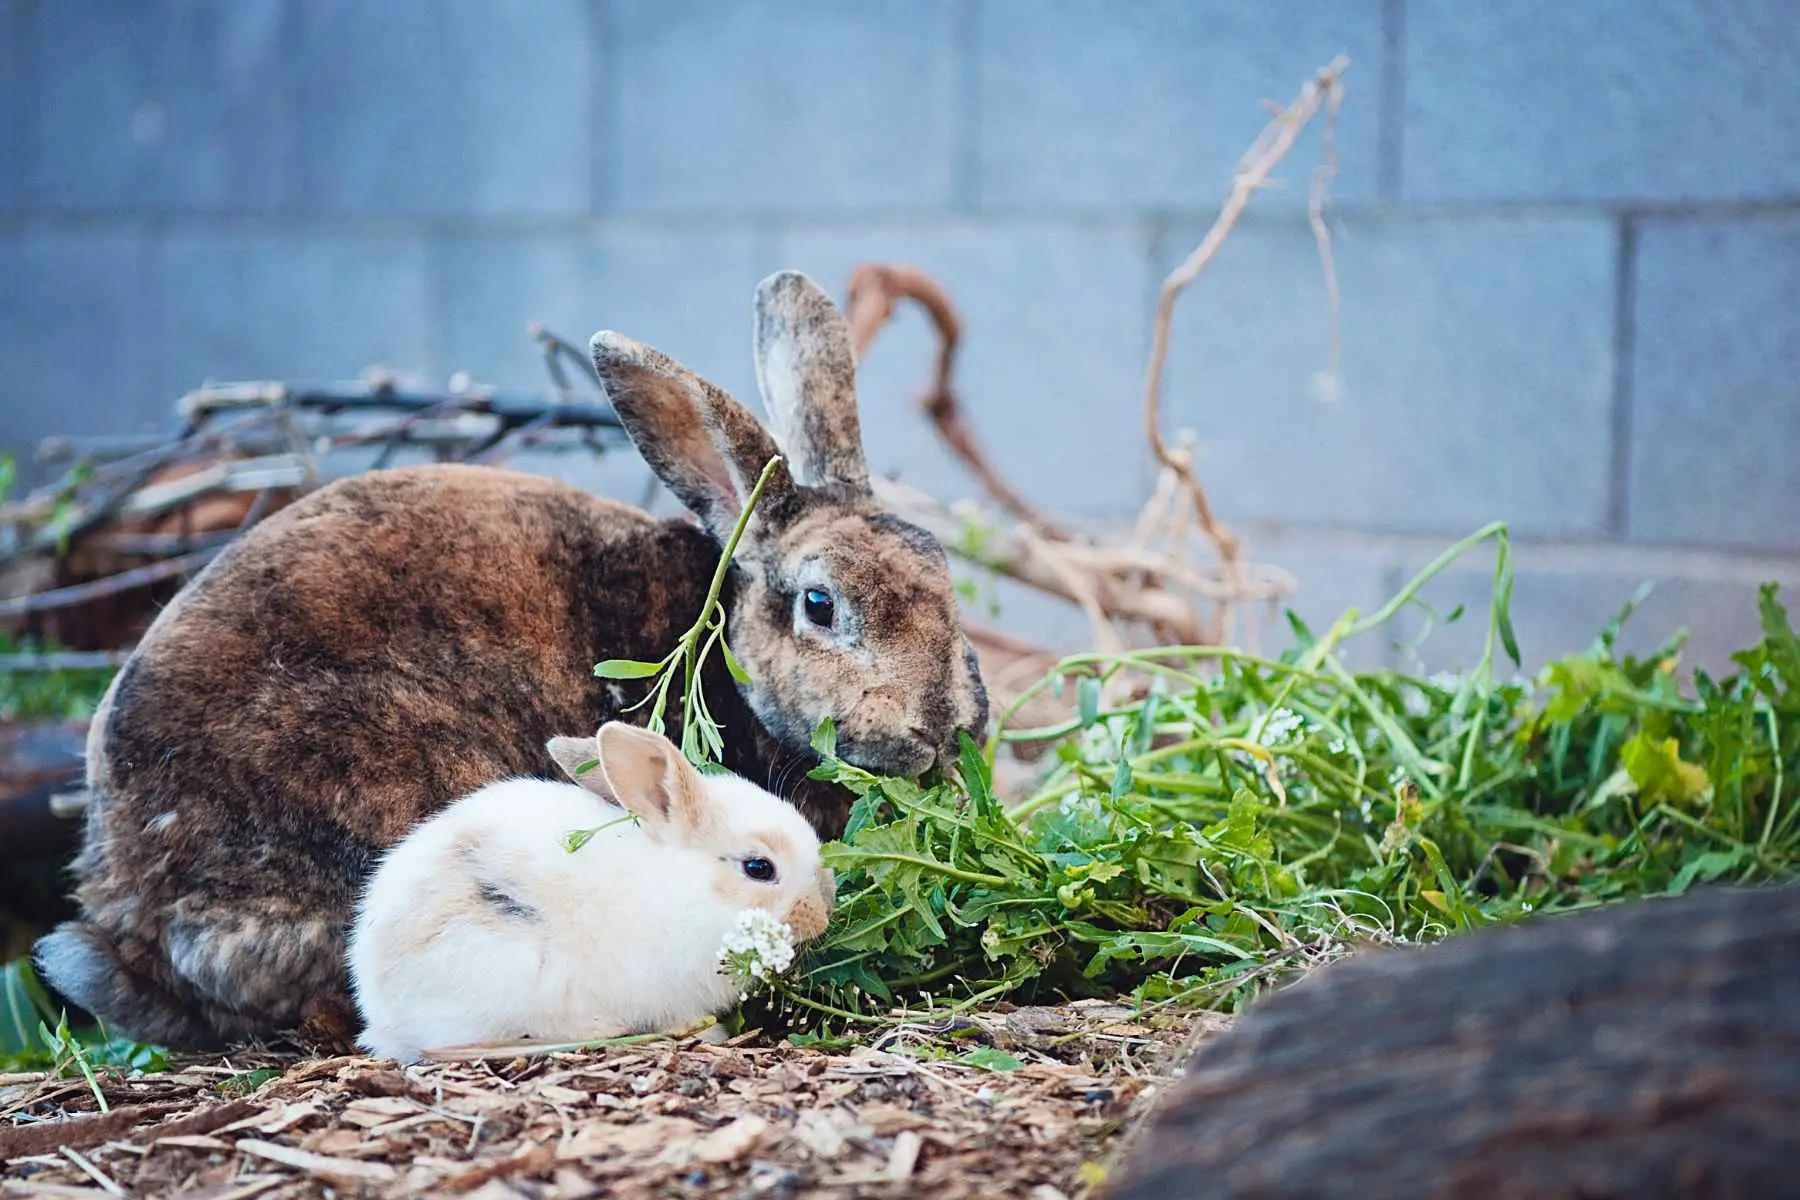 Rabbits eating lettuce